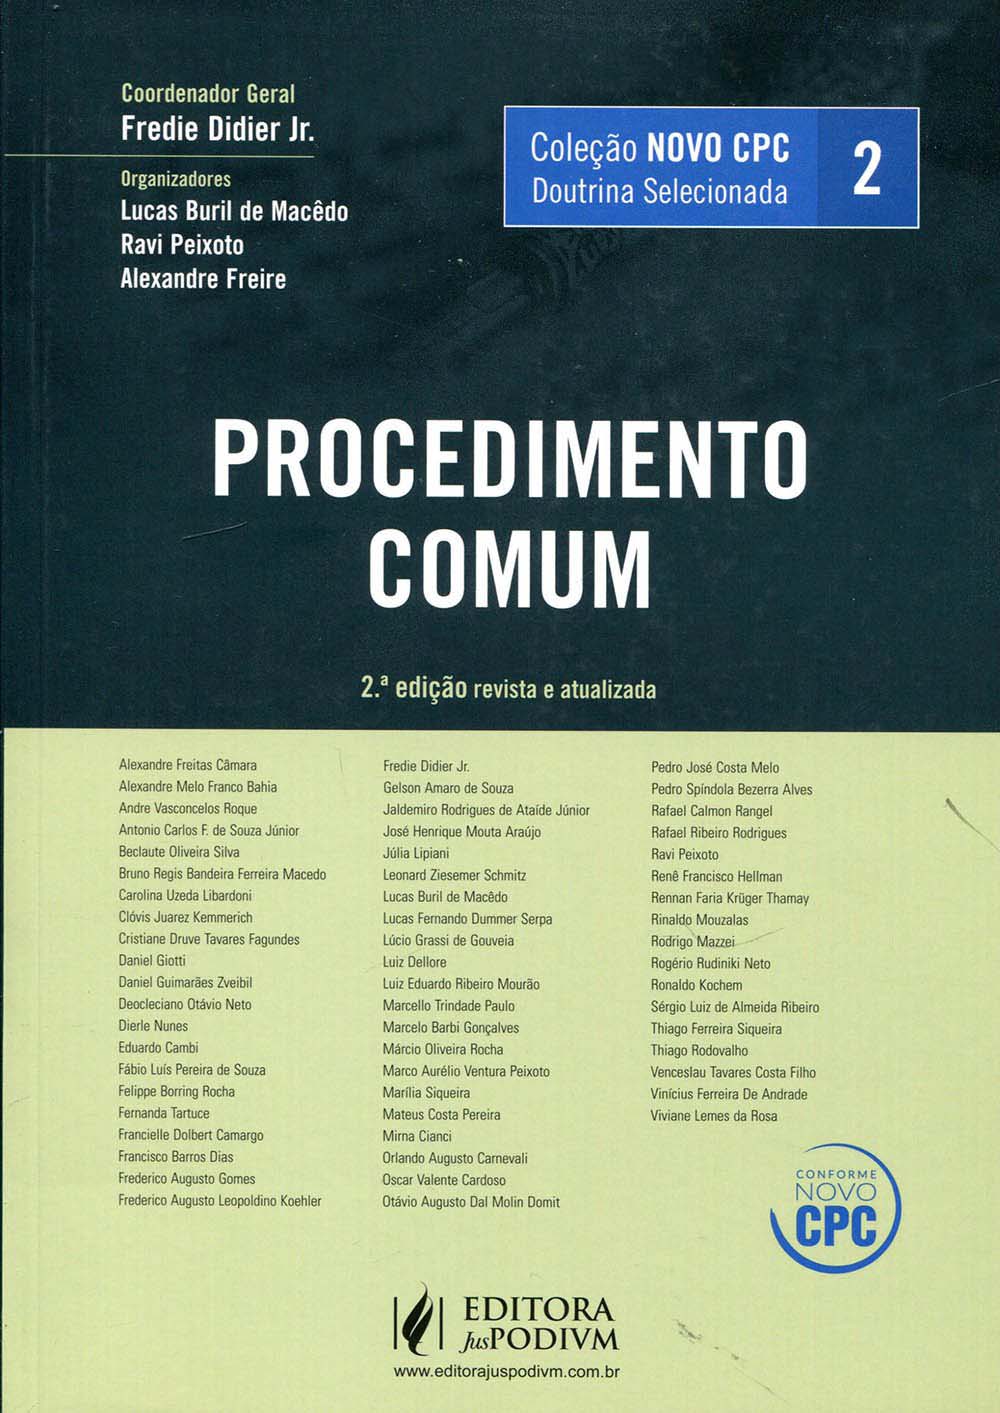 COLEÇÃO NOVO CPC - DOUTRINA SELECIONADA - V.2 - PROCEDIMENTO COMUM (2016)